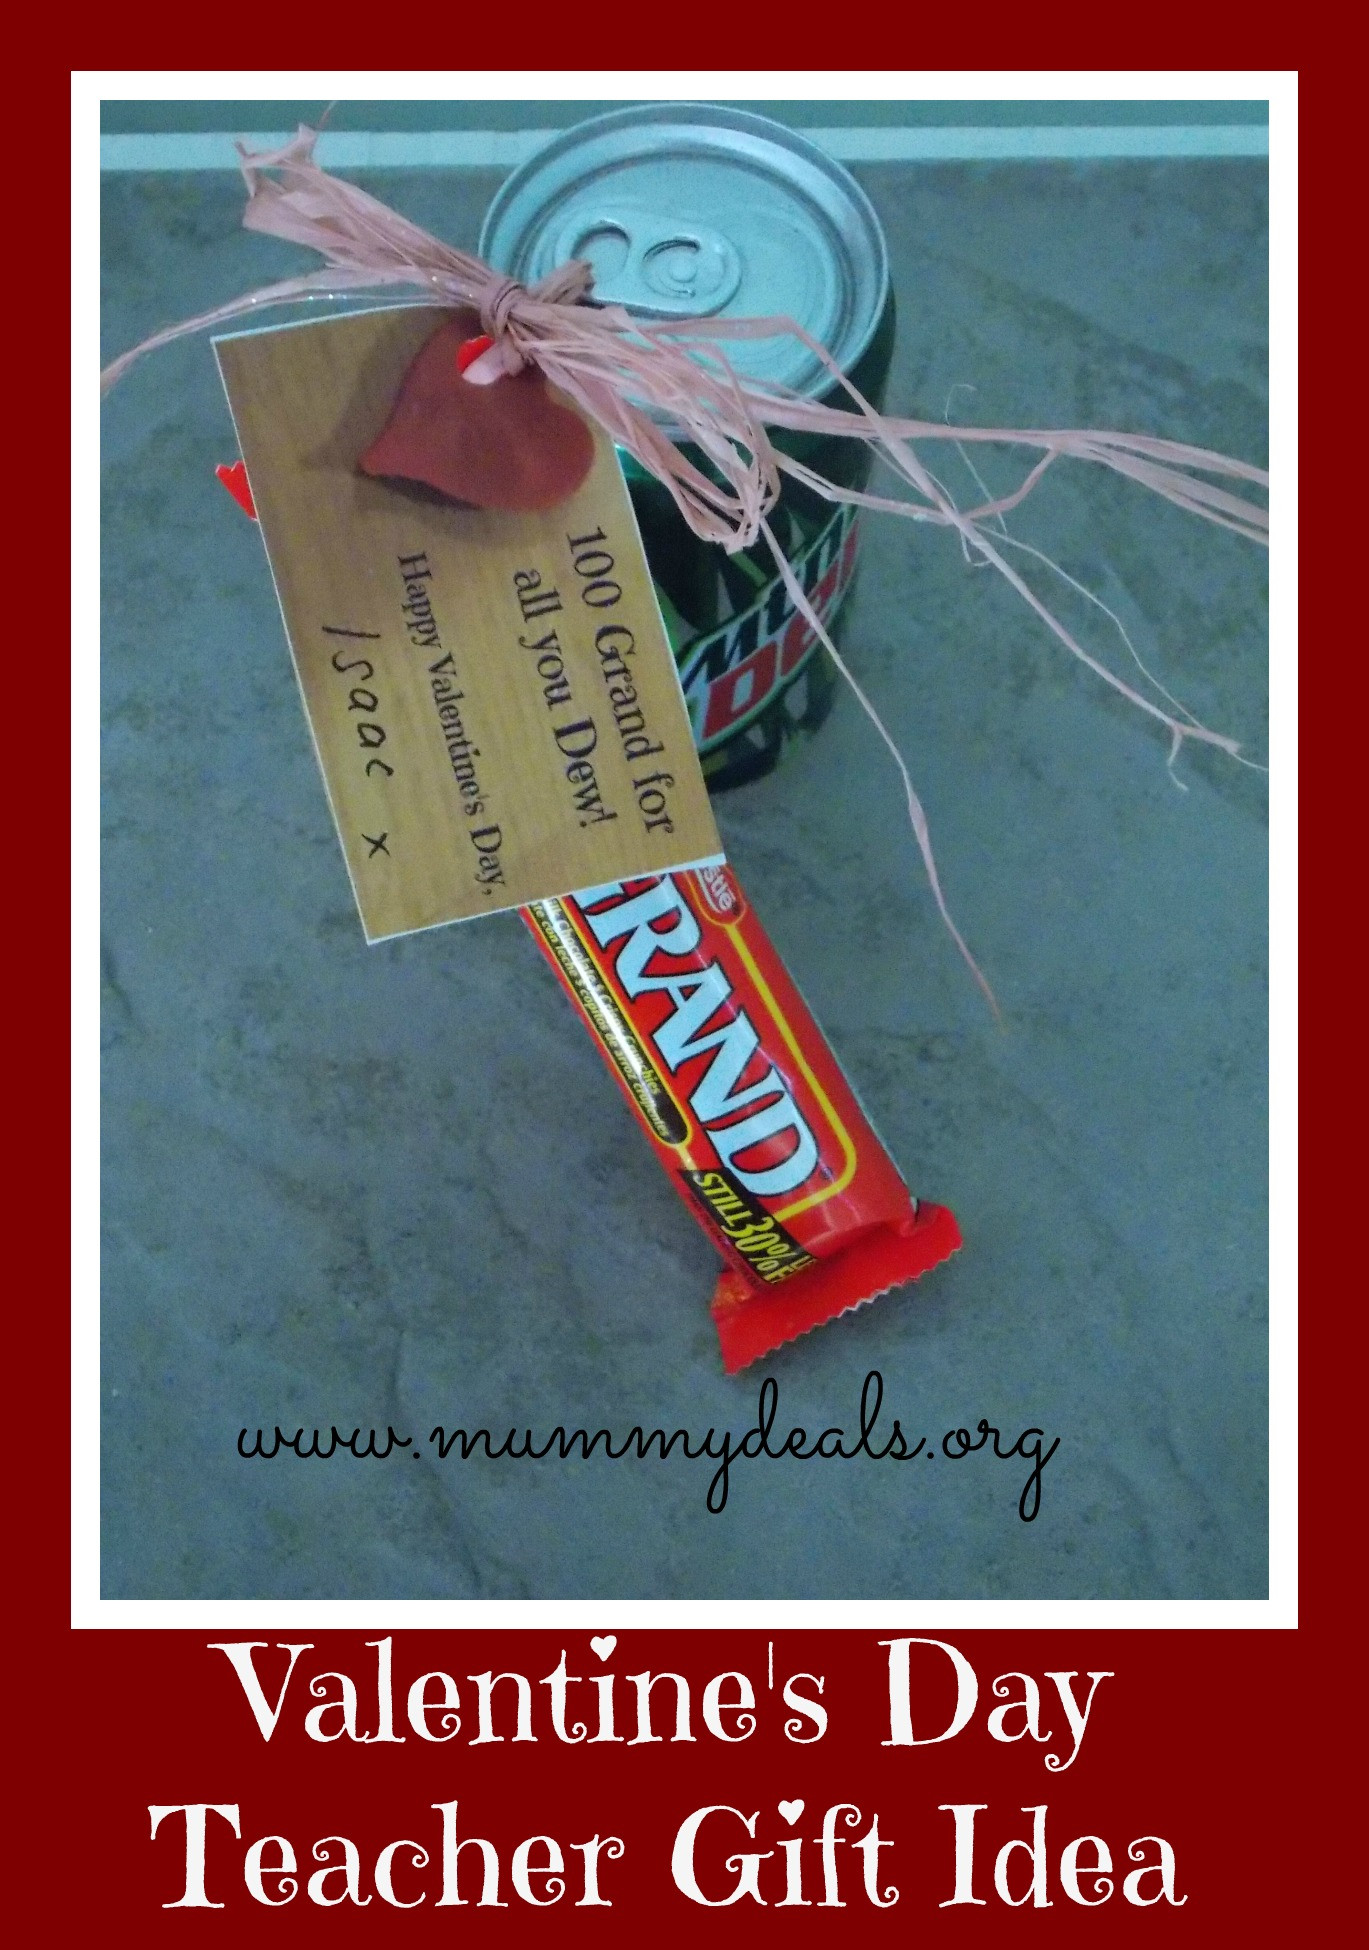 Teacher Valentine'S Day Gift Ideas
 6 Valentine s Day Teacher Gift Ideas Mummy Deals